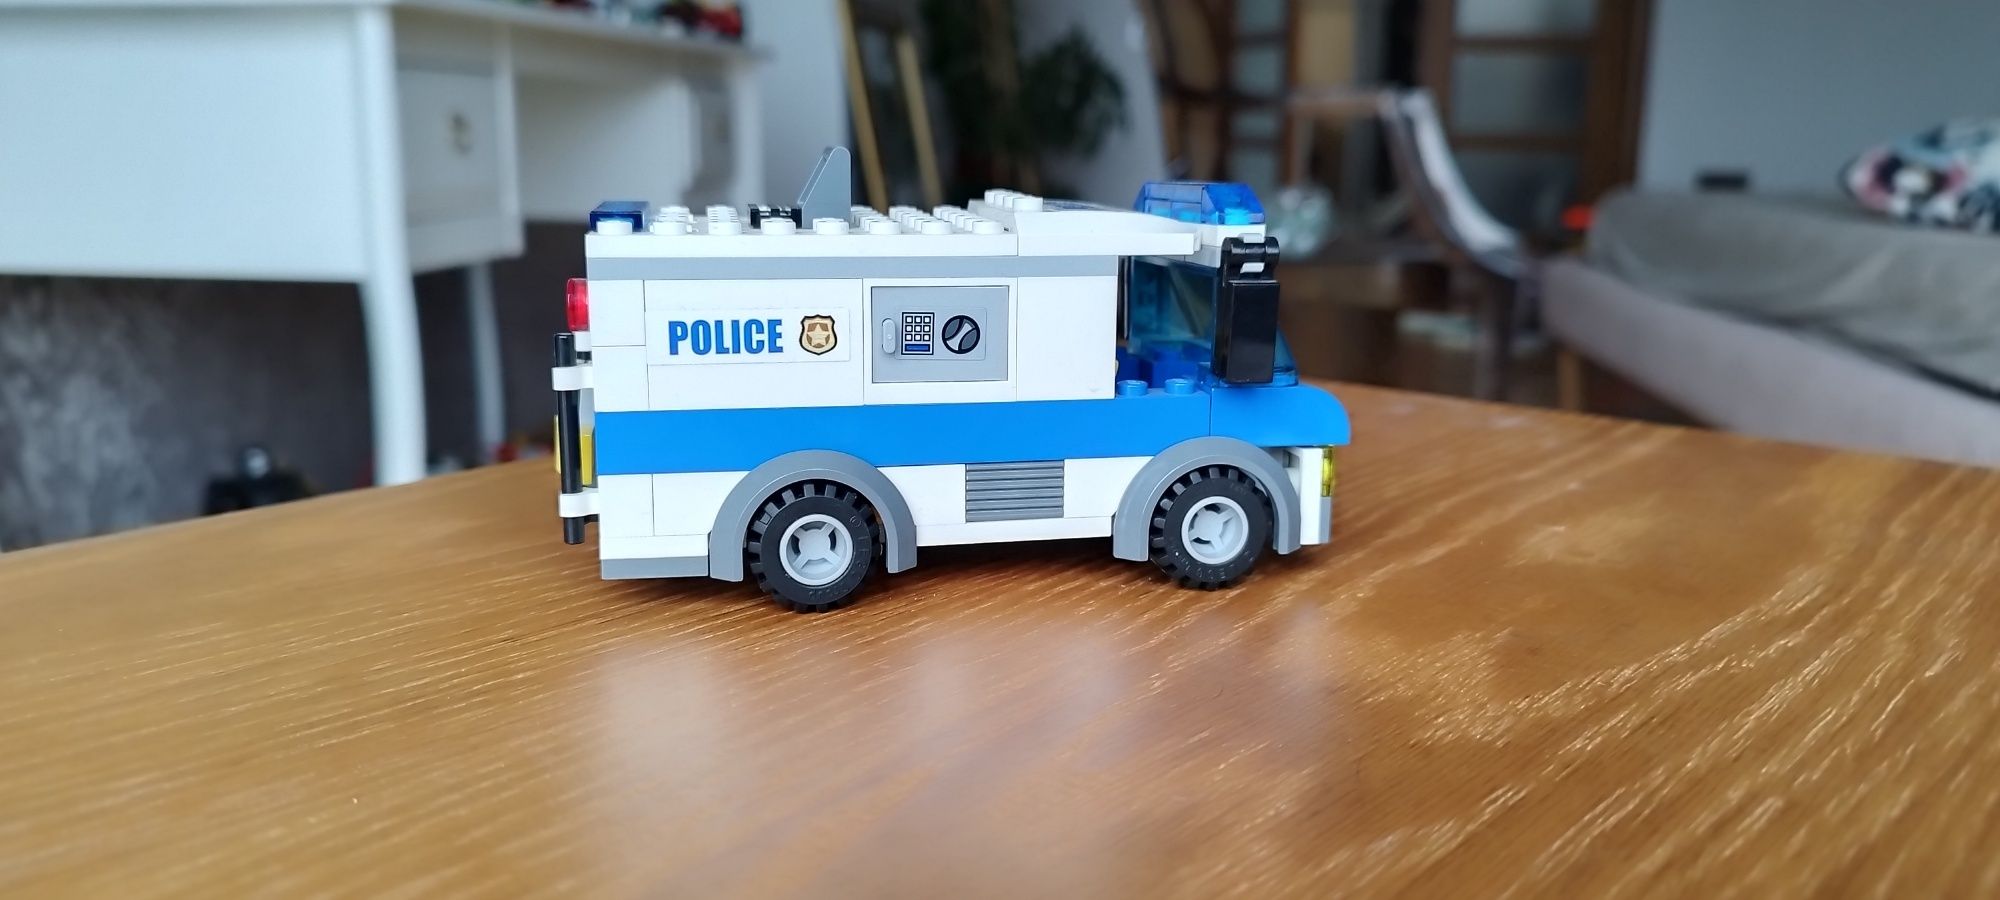 Sprzedam lego furgonetka policyjną